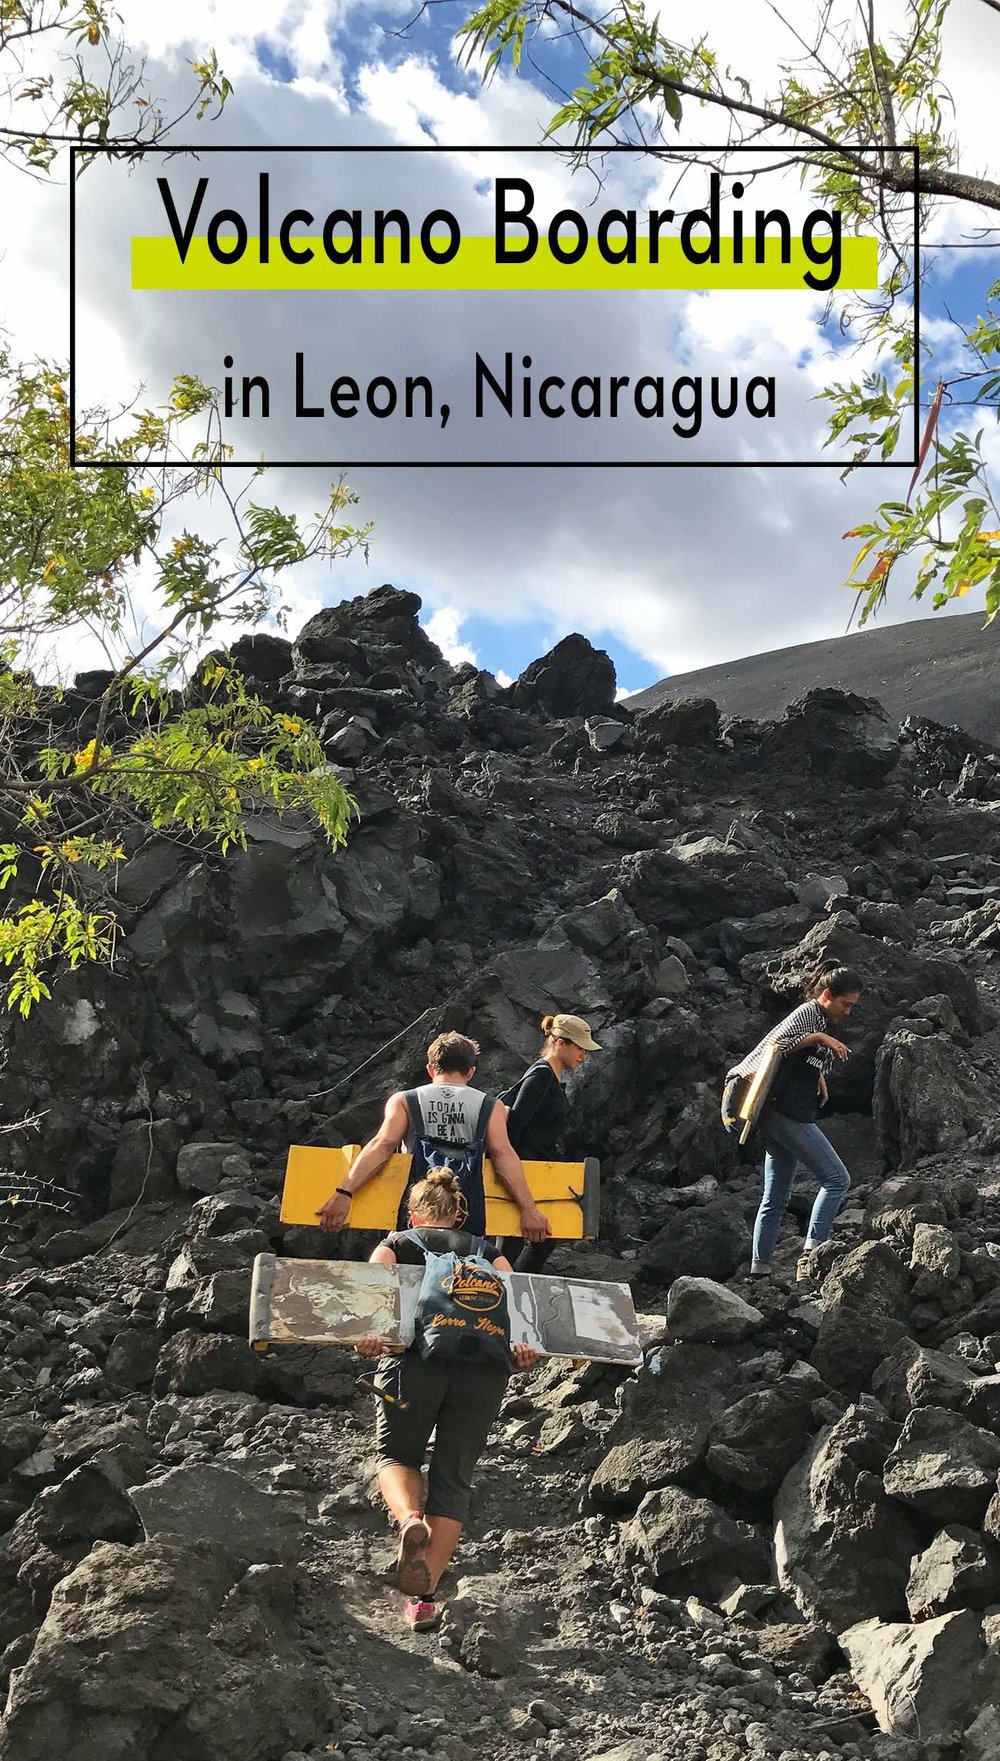 Volcano boarding in Leon Nicaragua